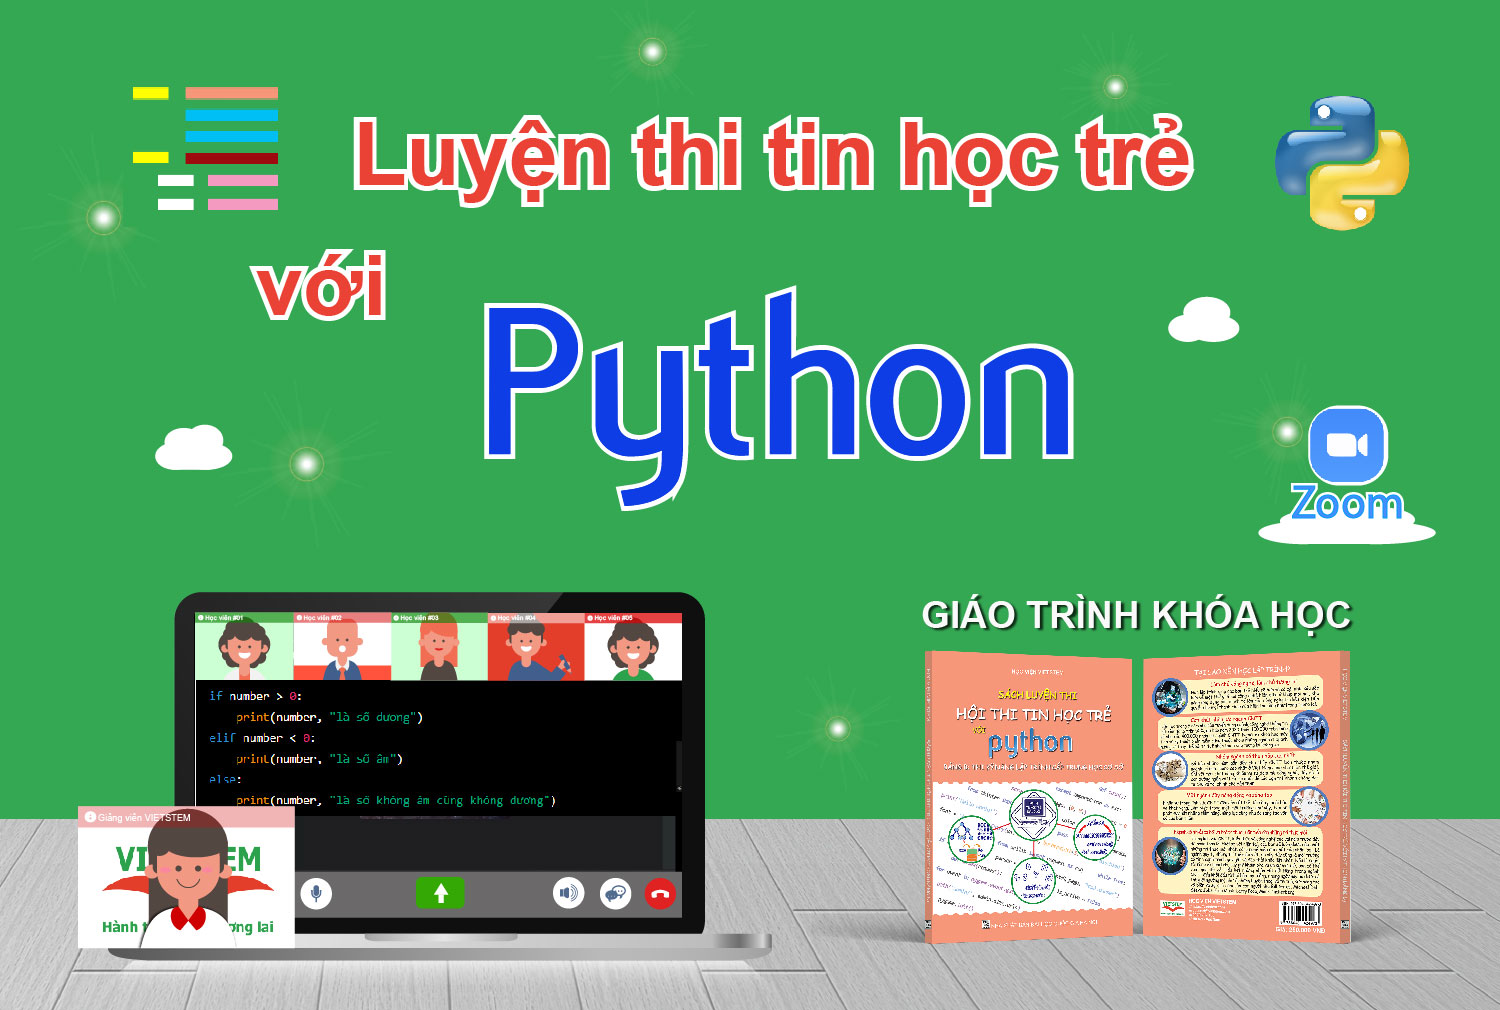 Luyện thi Tin học trẻ Python trực tuyến với giảng viên